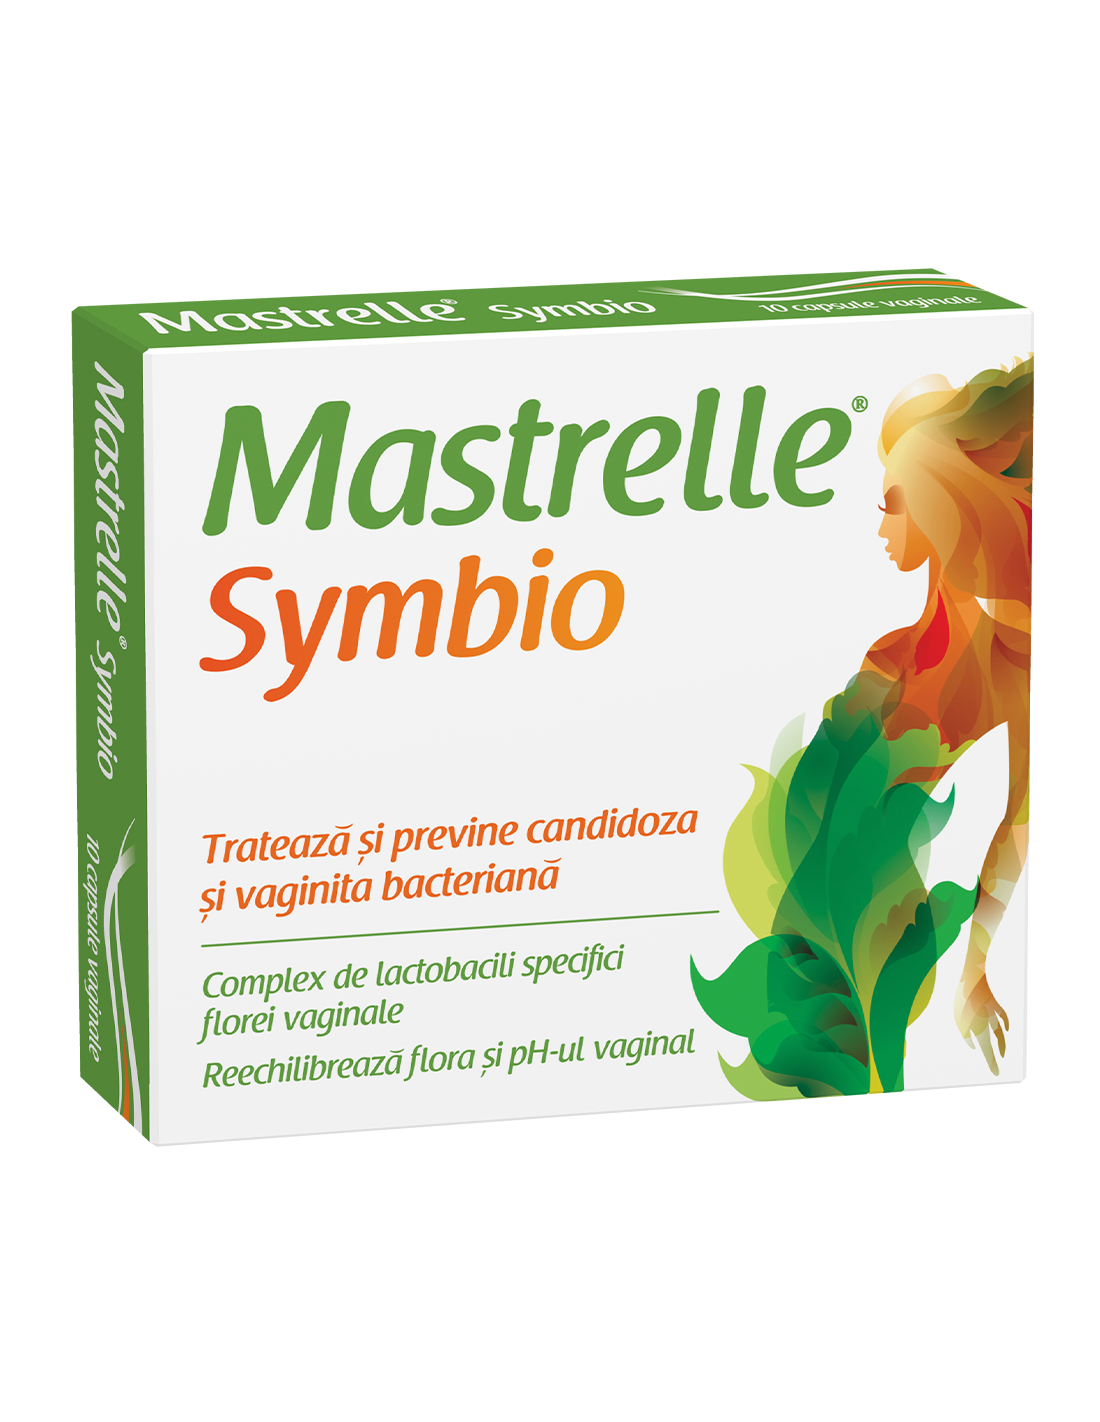 Mastrelle Symbio, 10 capsule vaginale - AFECTIUNI-GENITALE - FITERMAN